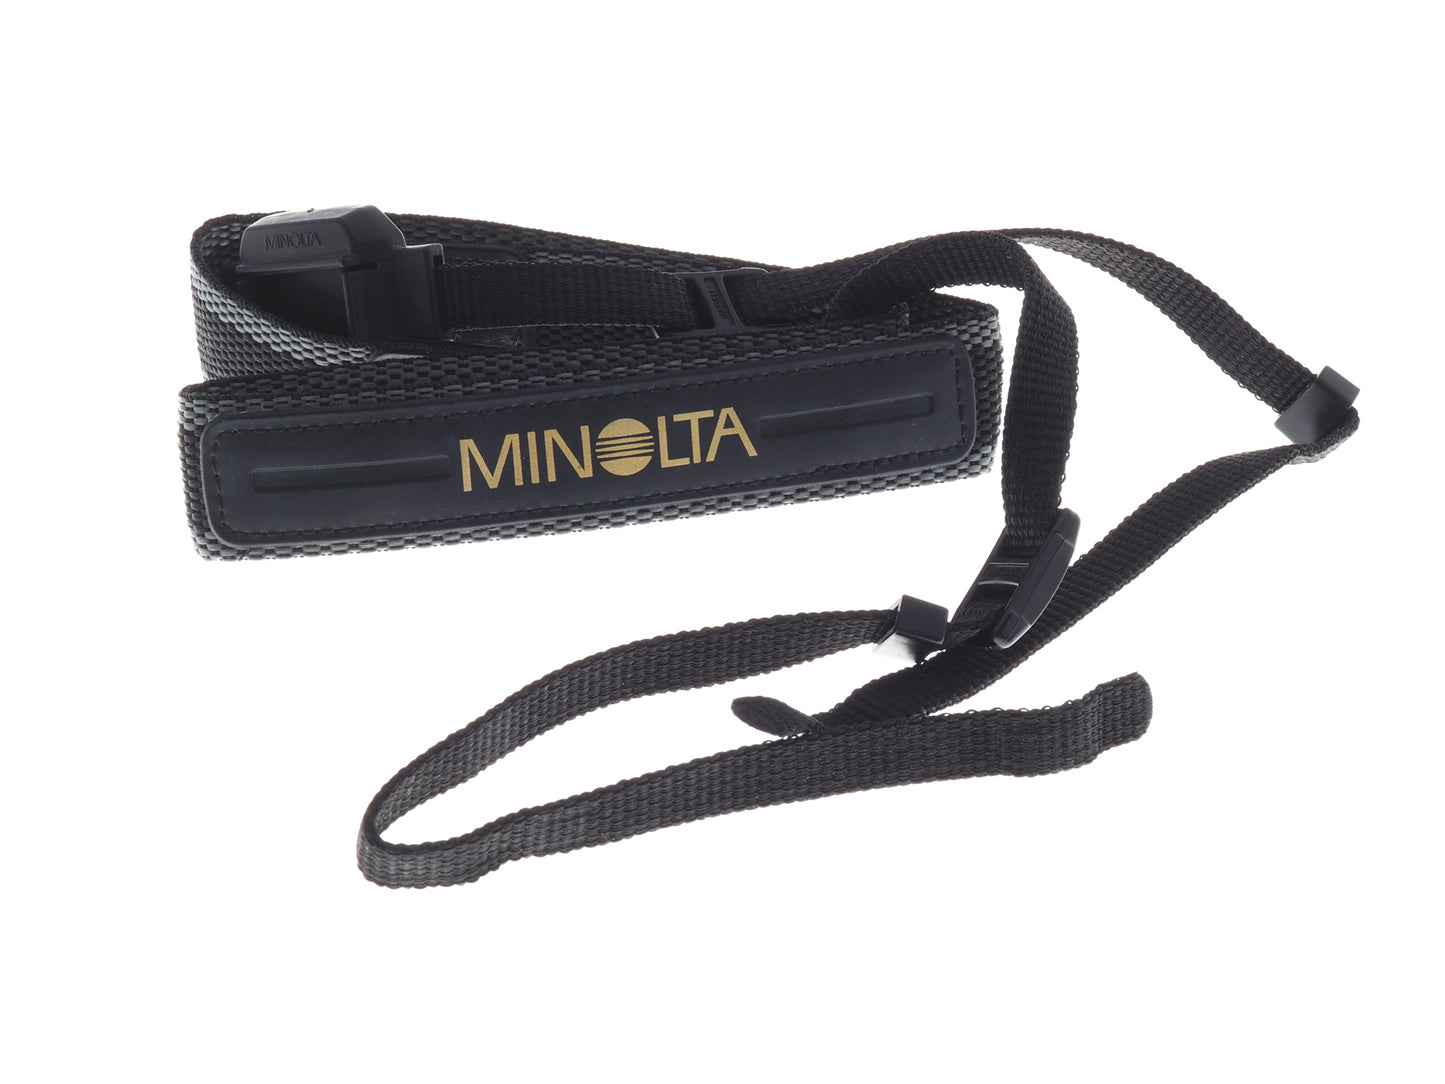 Minolta Neck Strap - Accessory